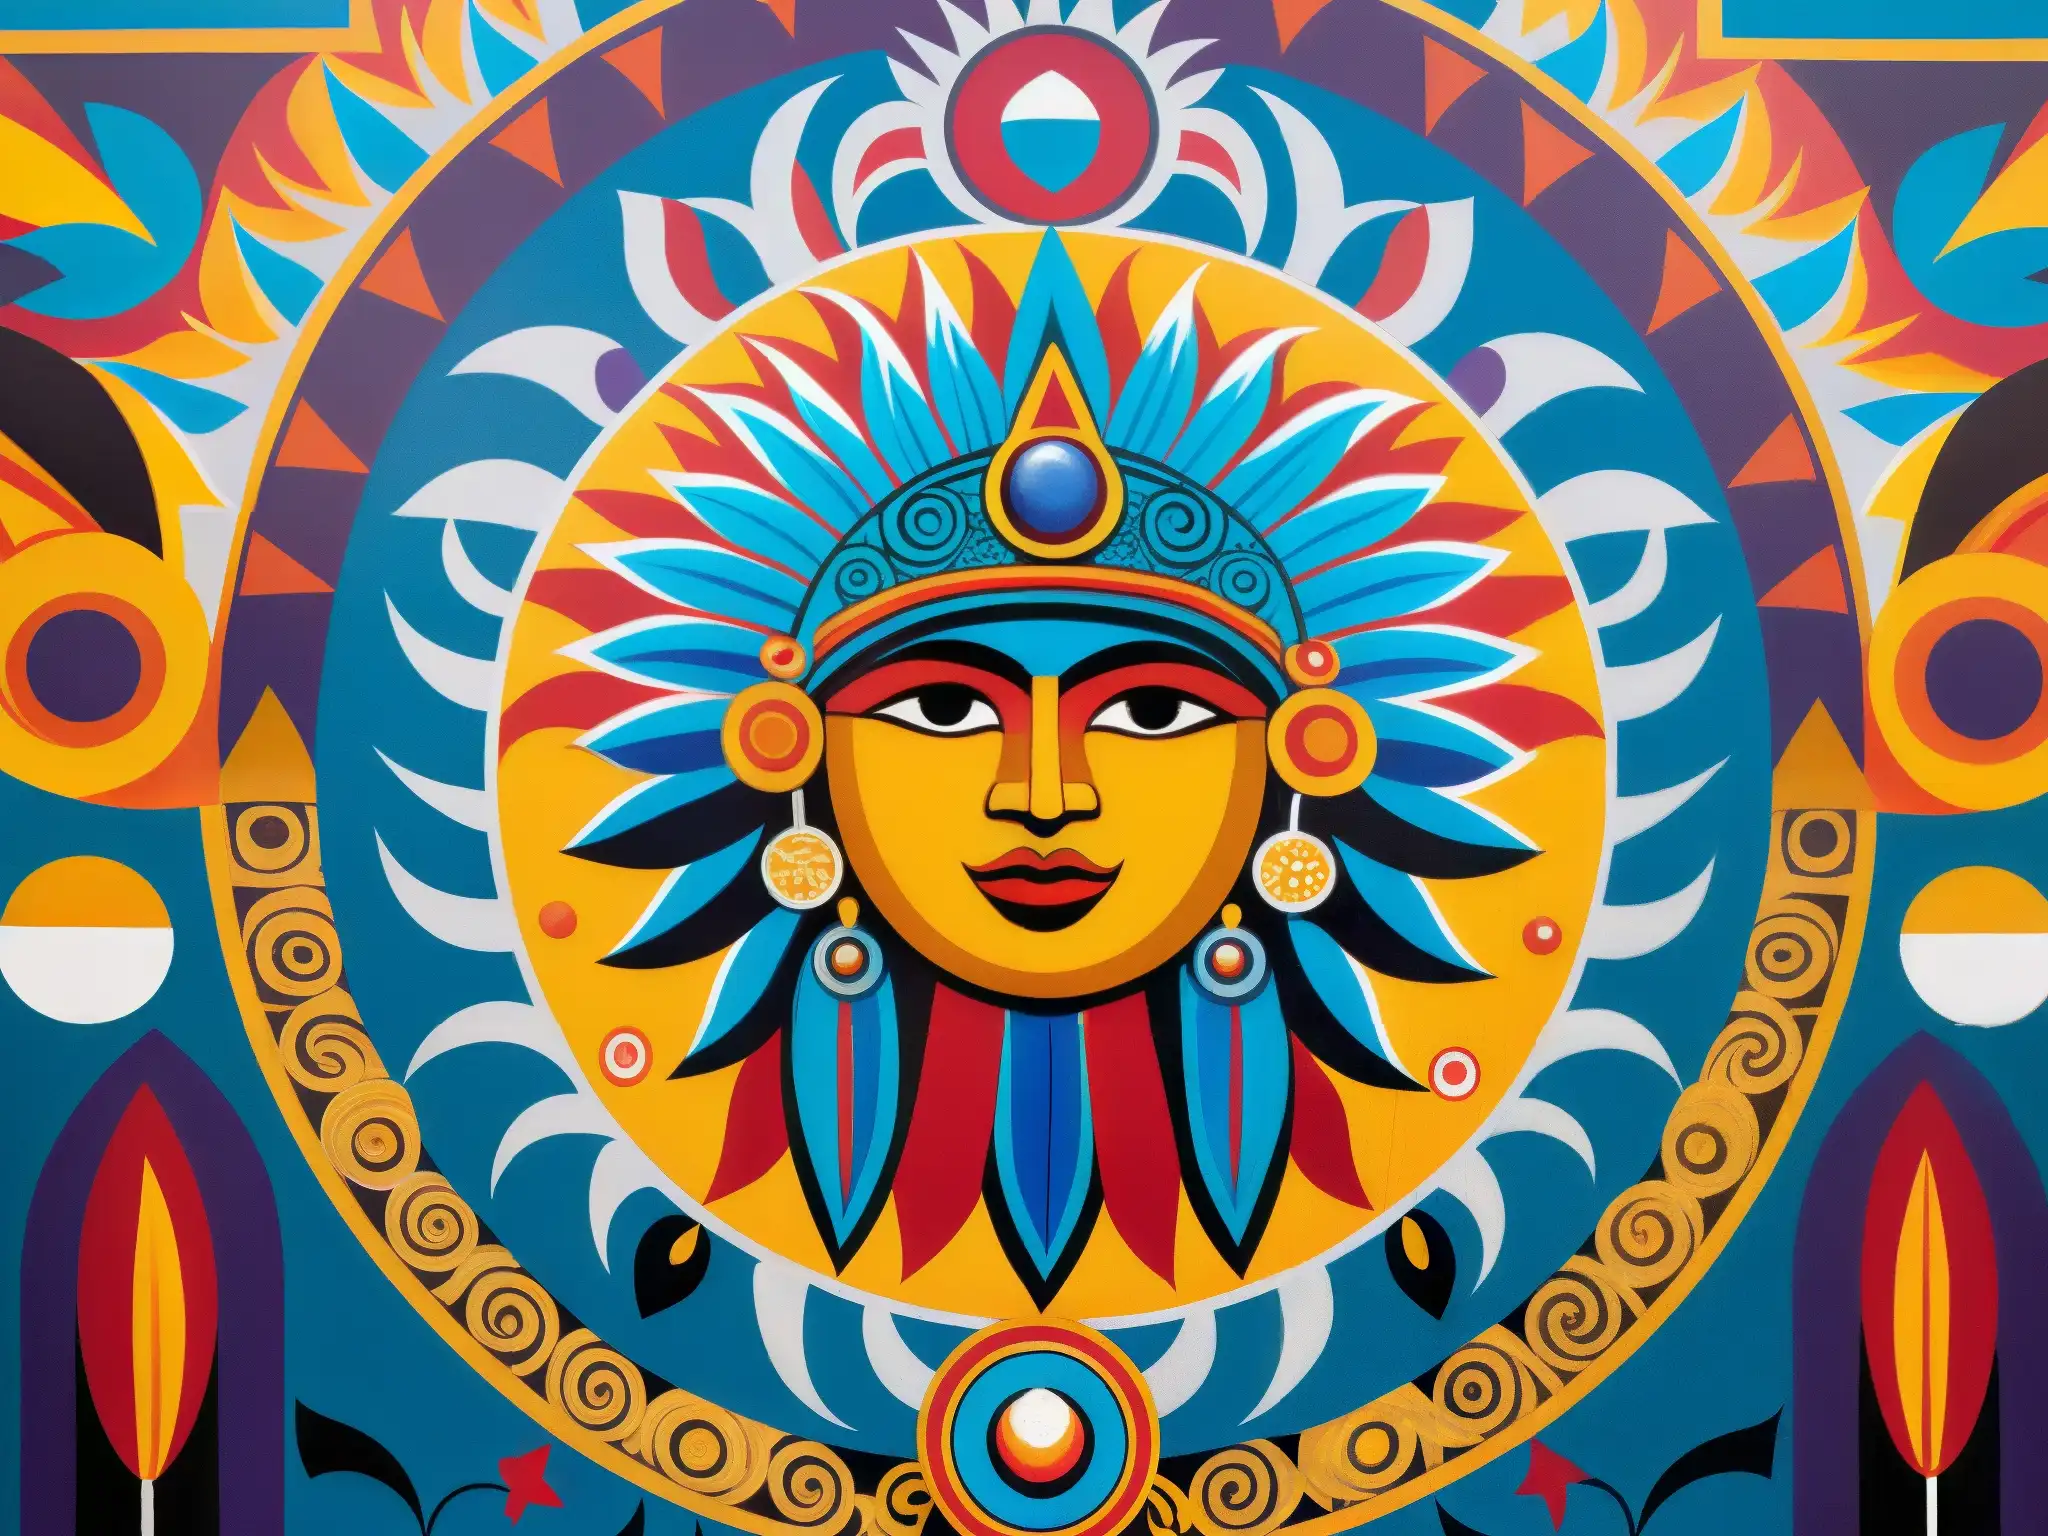 Un vibrante mural de las deidades aztecas del sol y la luna, rodeado de patrones geométricos, plumas y joyas